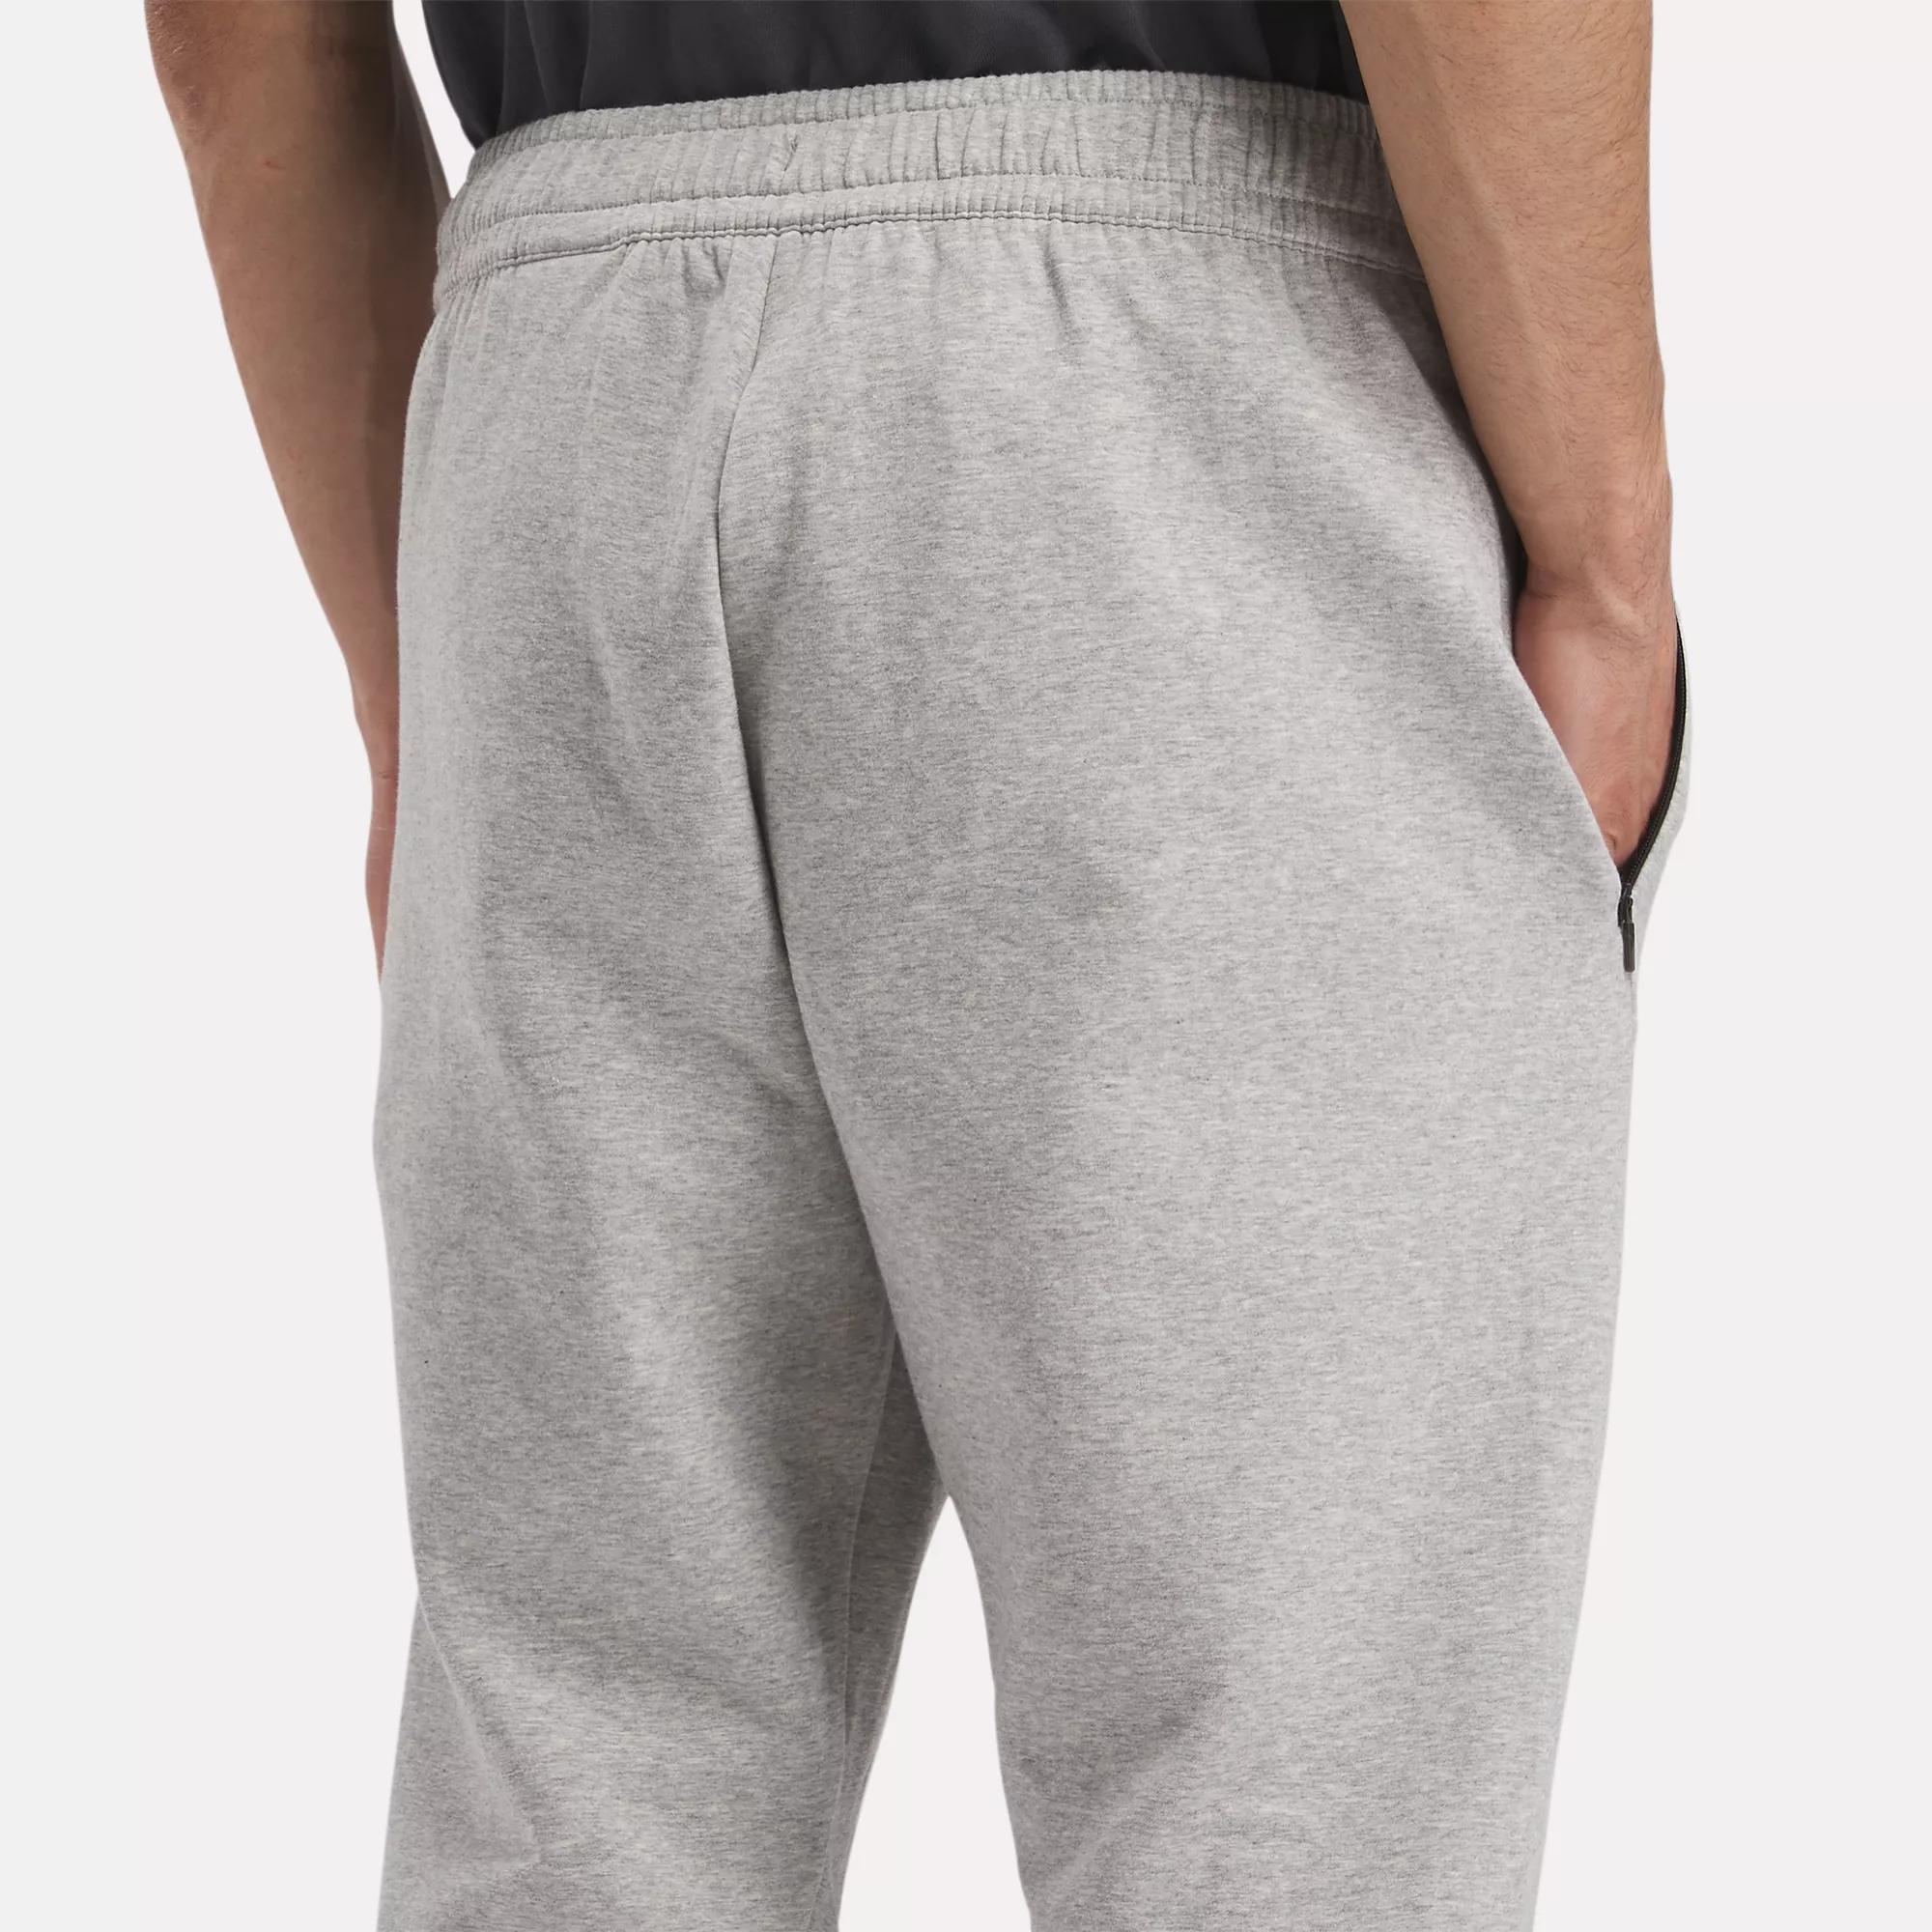 DreamBlend Pants | eBay